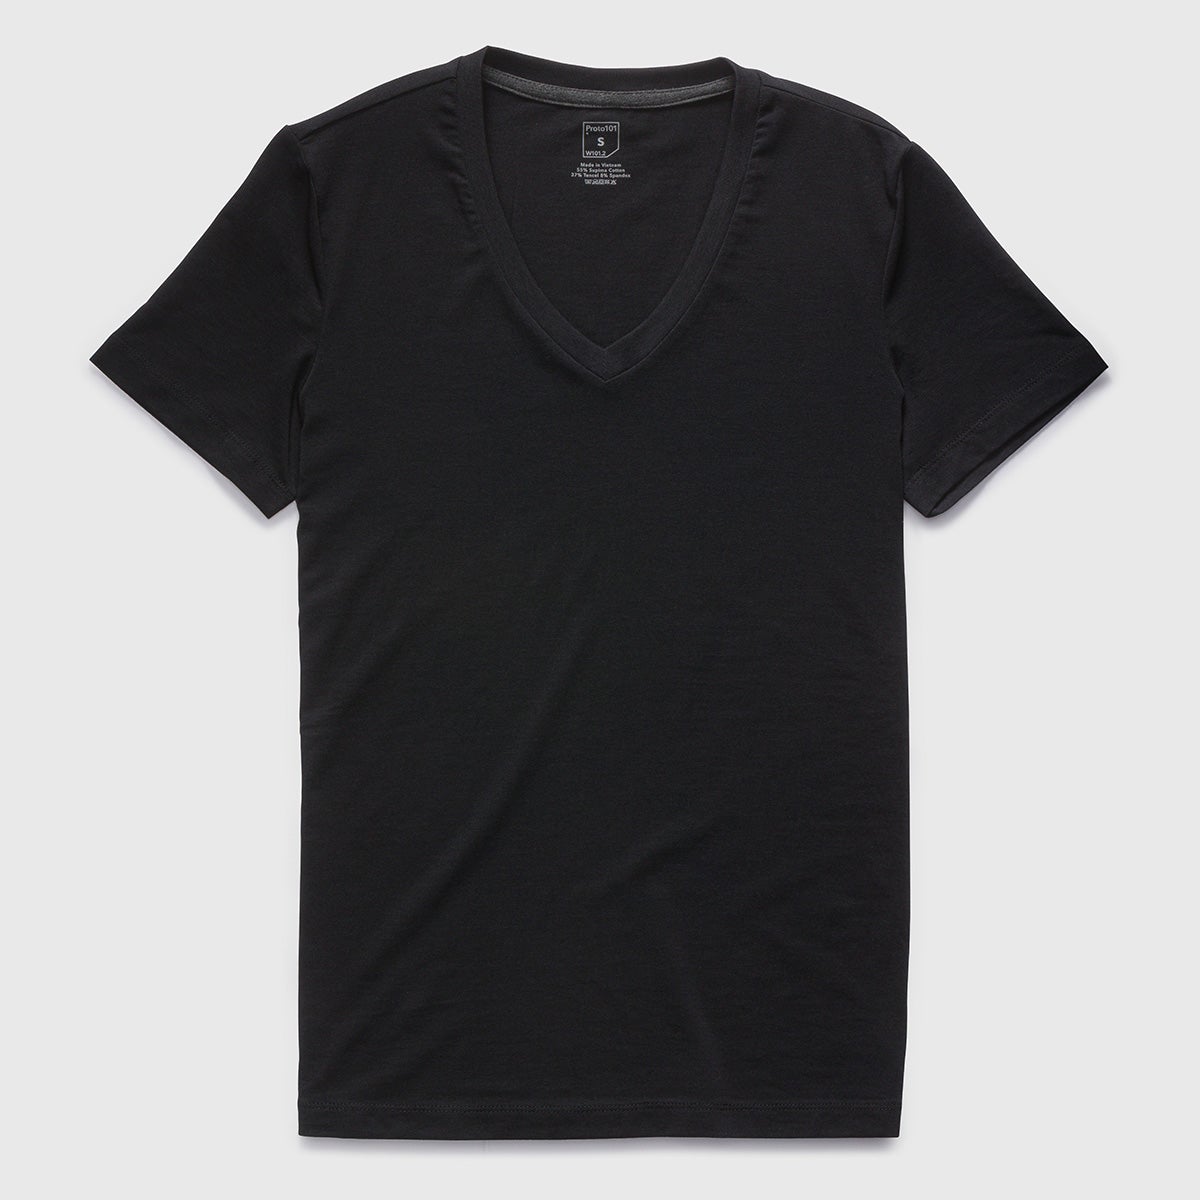 https://proto101.com/cdn/shop/products/t-shirt-women-s-classic-v-neck-t-shirt-in-supima-cotton-stretch-21.jpg?v=1708498545